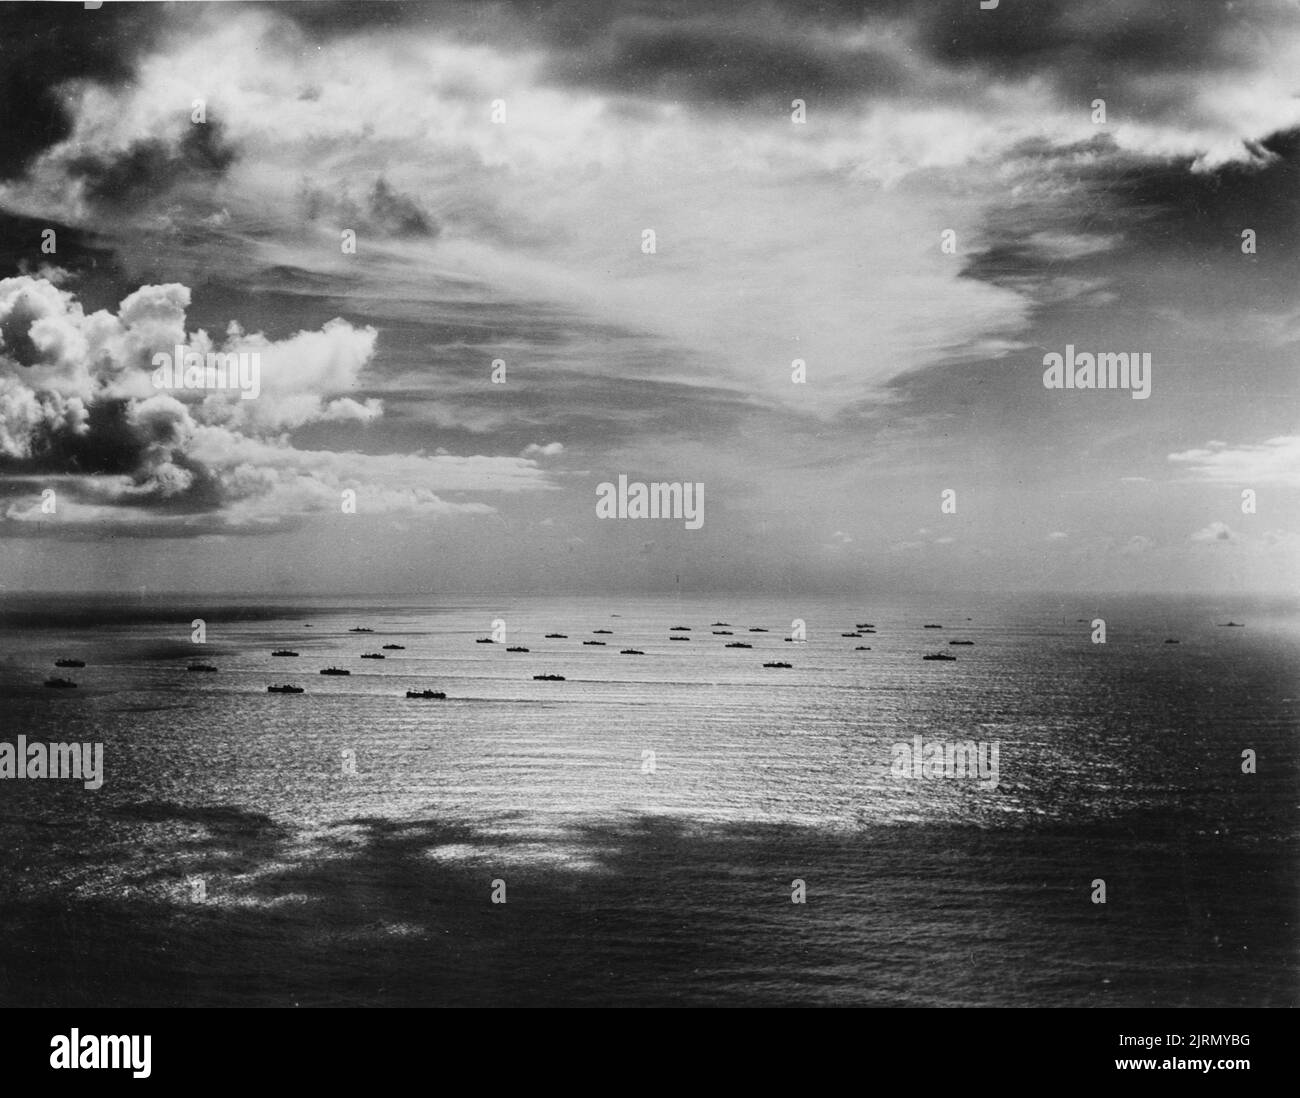 Ein Vintage-Foto um 1942, das einen Konvoi von Handelsschiffen zeigt, die während des Zweiten Weltkriegs den Atlantik überquerten Stockfoto